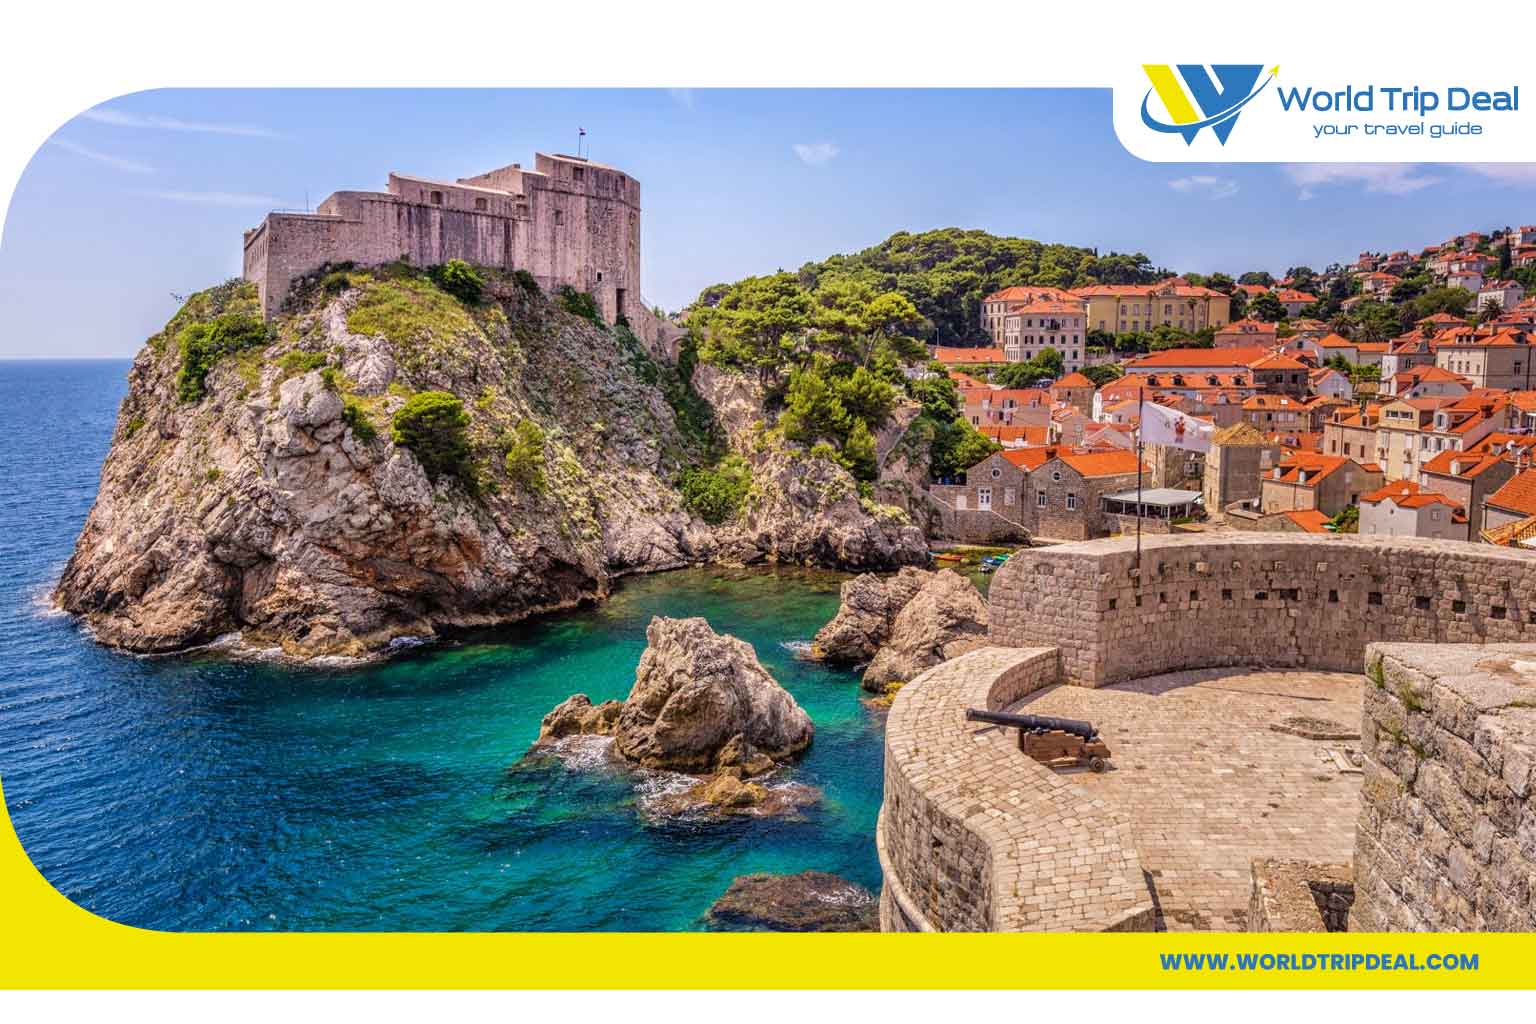 السياحة في كرواتيا- كرواتيا  - كرواتيا المدن الساحلية والجزر ذات المناظر الخلابة - ورلد تريب ديل